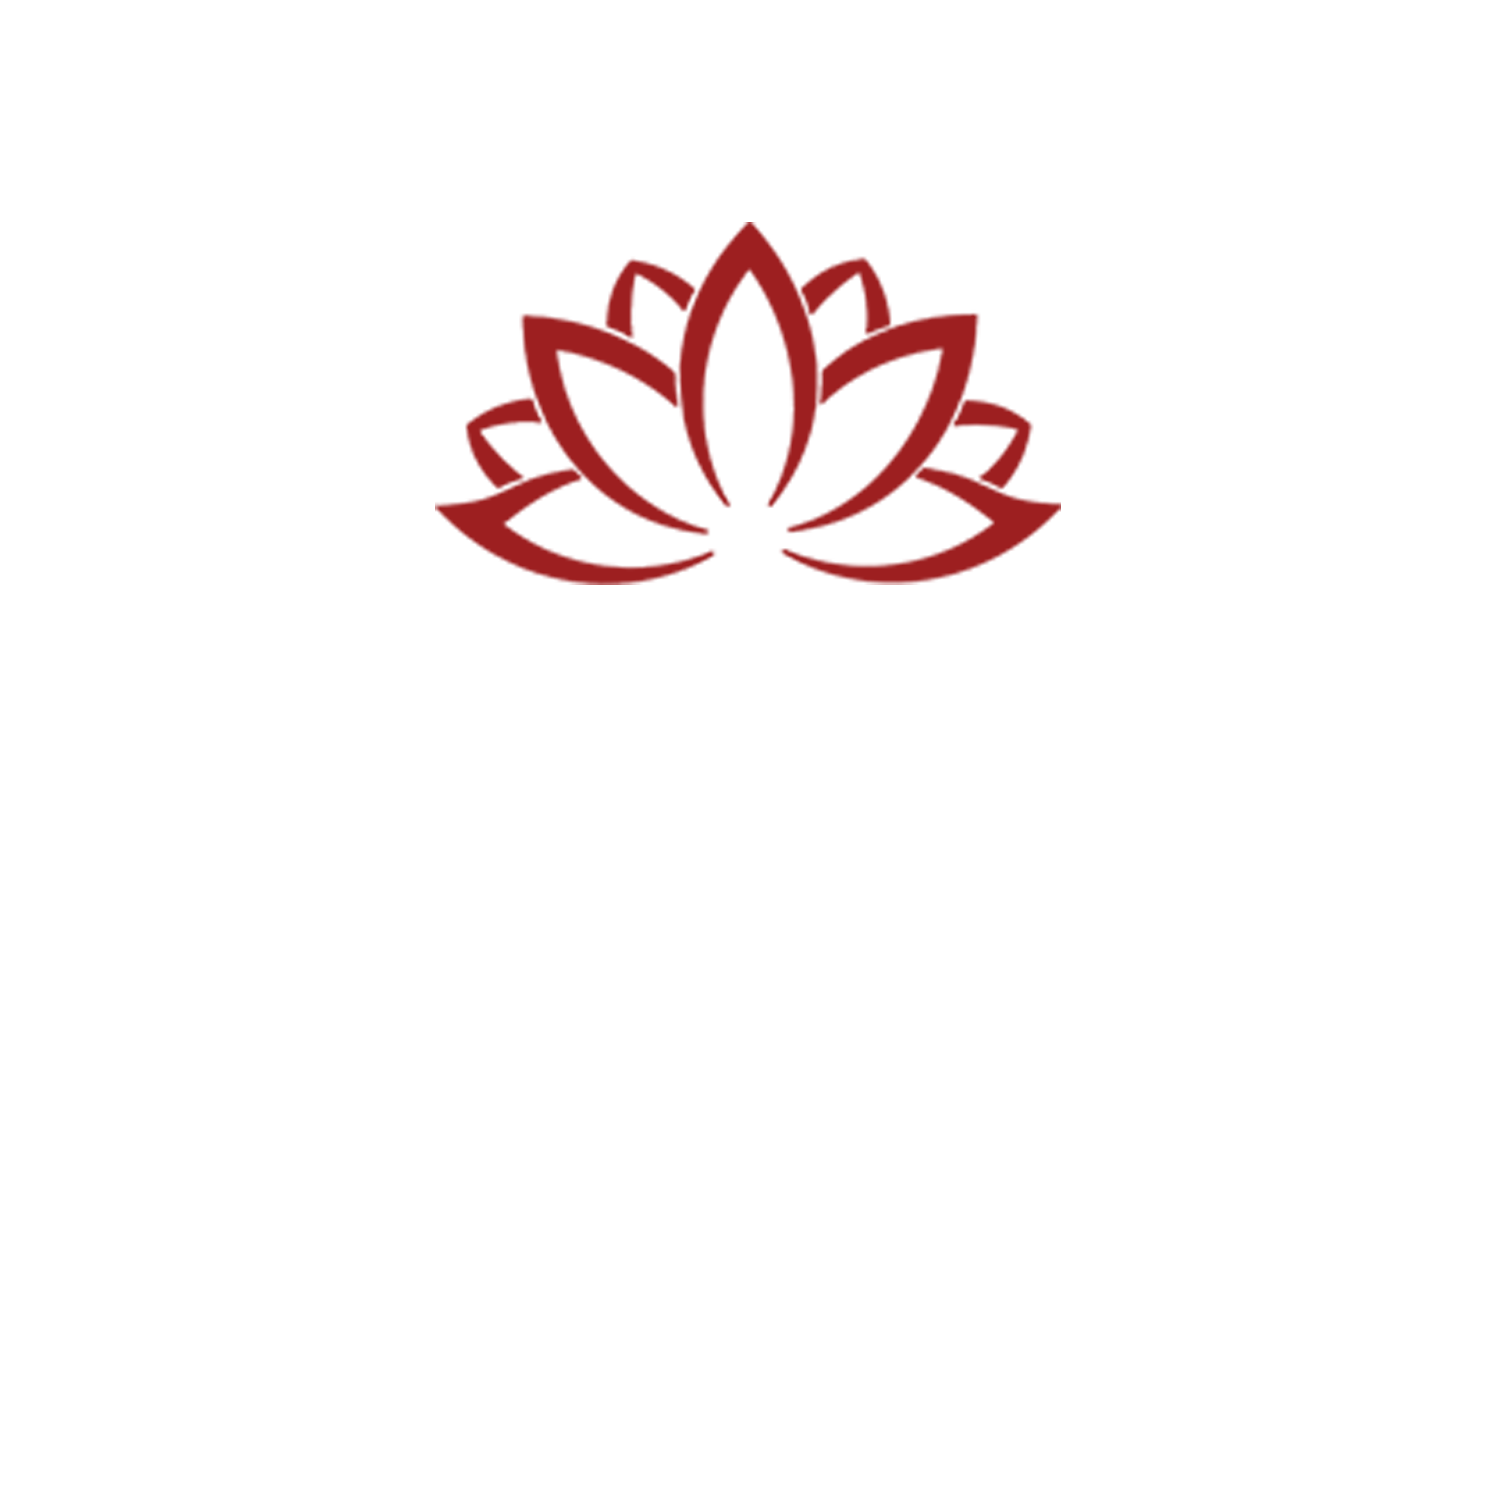 Pampered Salon & Spa